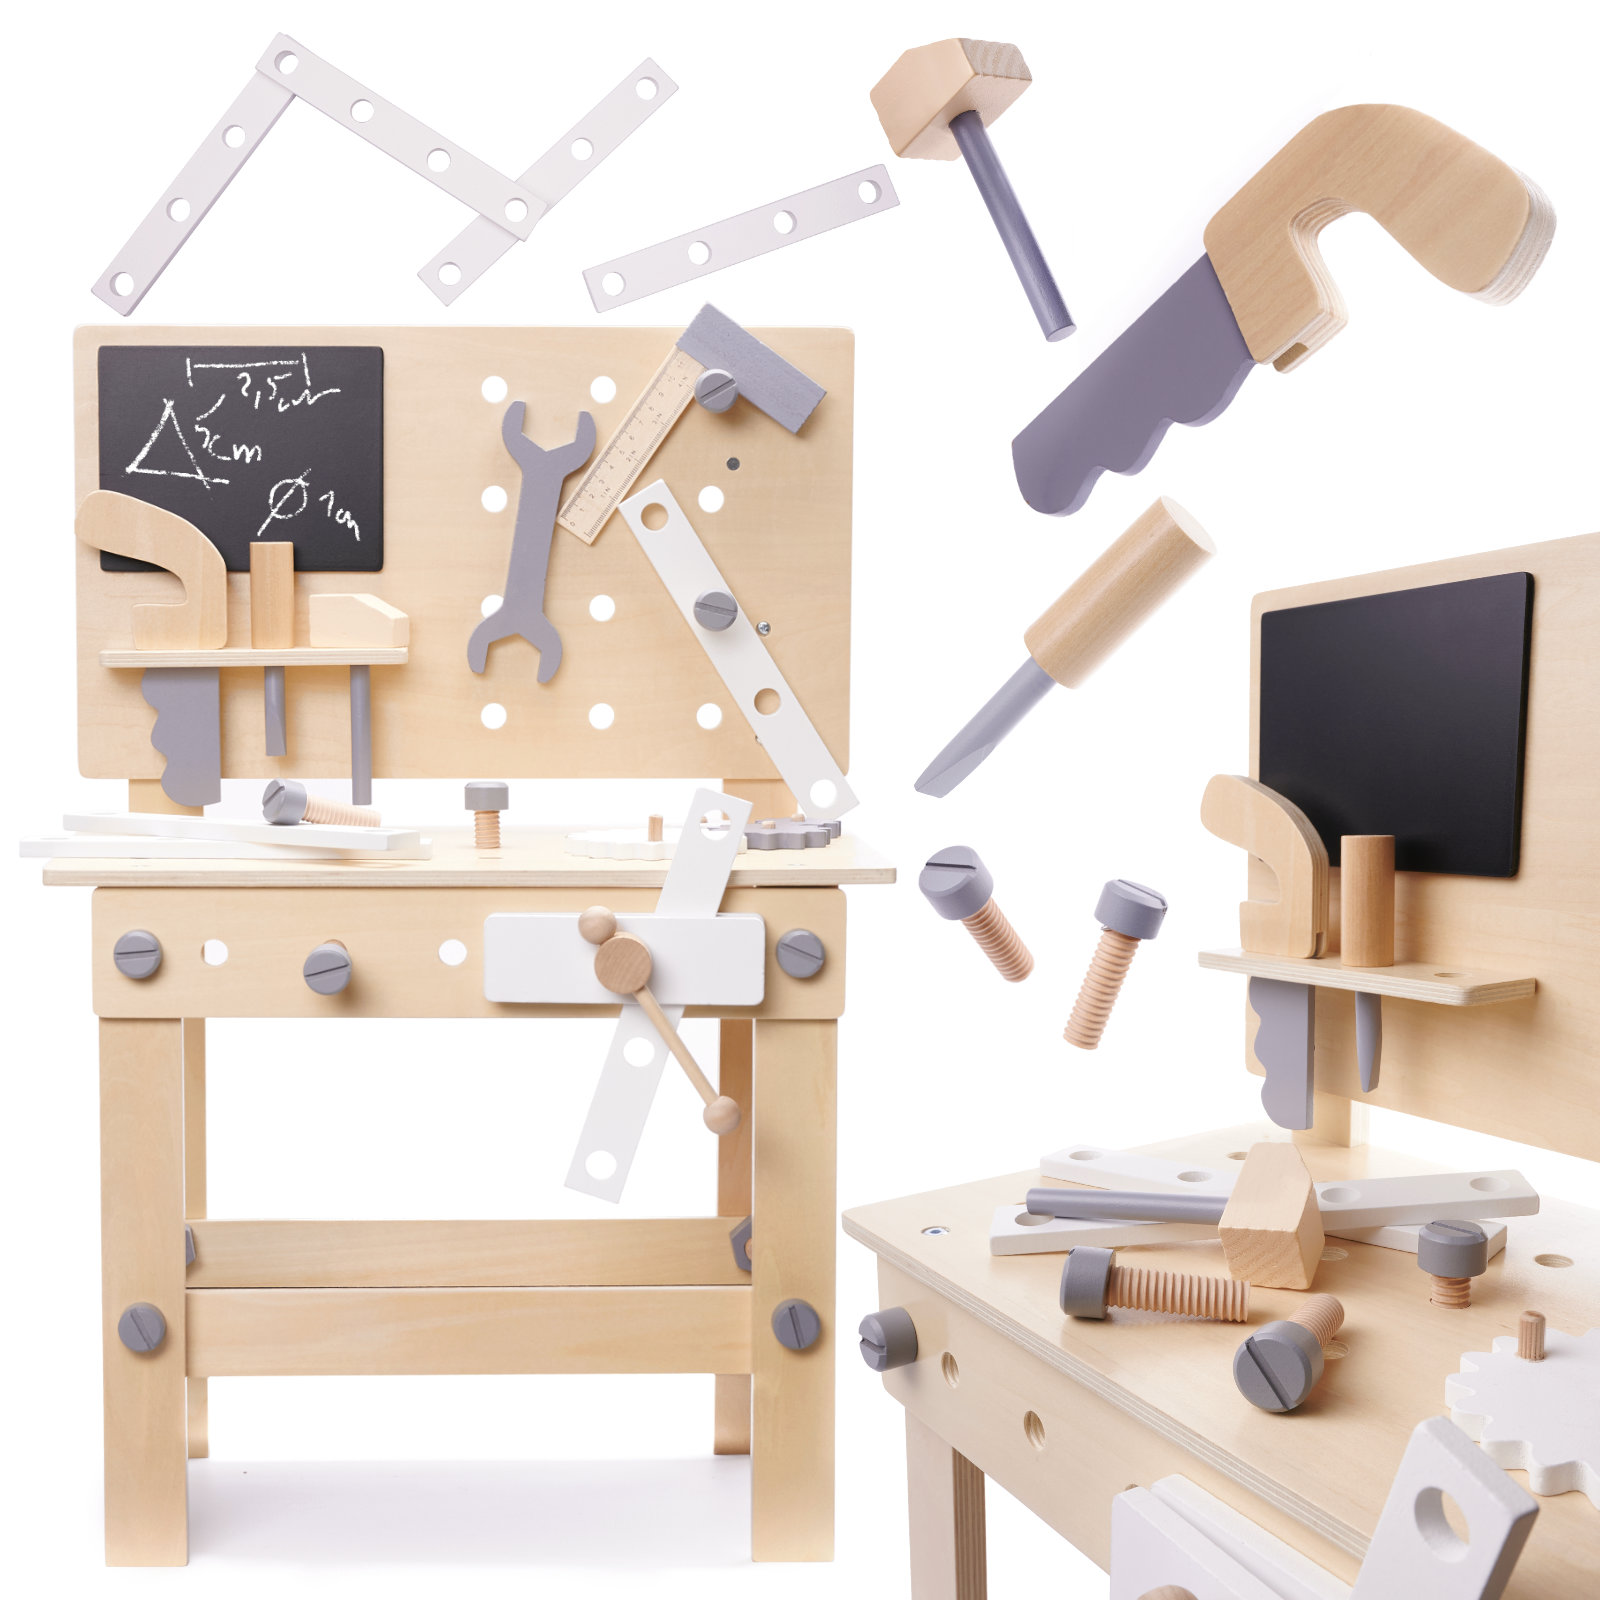 Bērnu Rotaļu Komplekts Konstruktors Koka Darbnīca ar koka darbarīkiem un galdu | Workshop with wooden tools and...